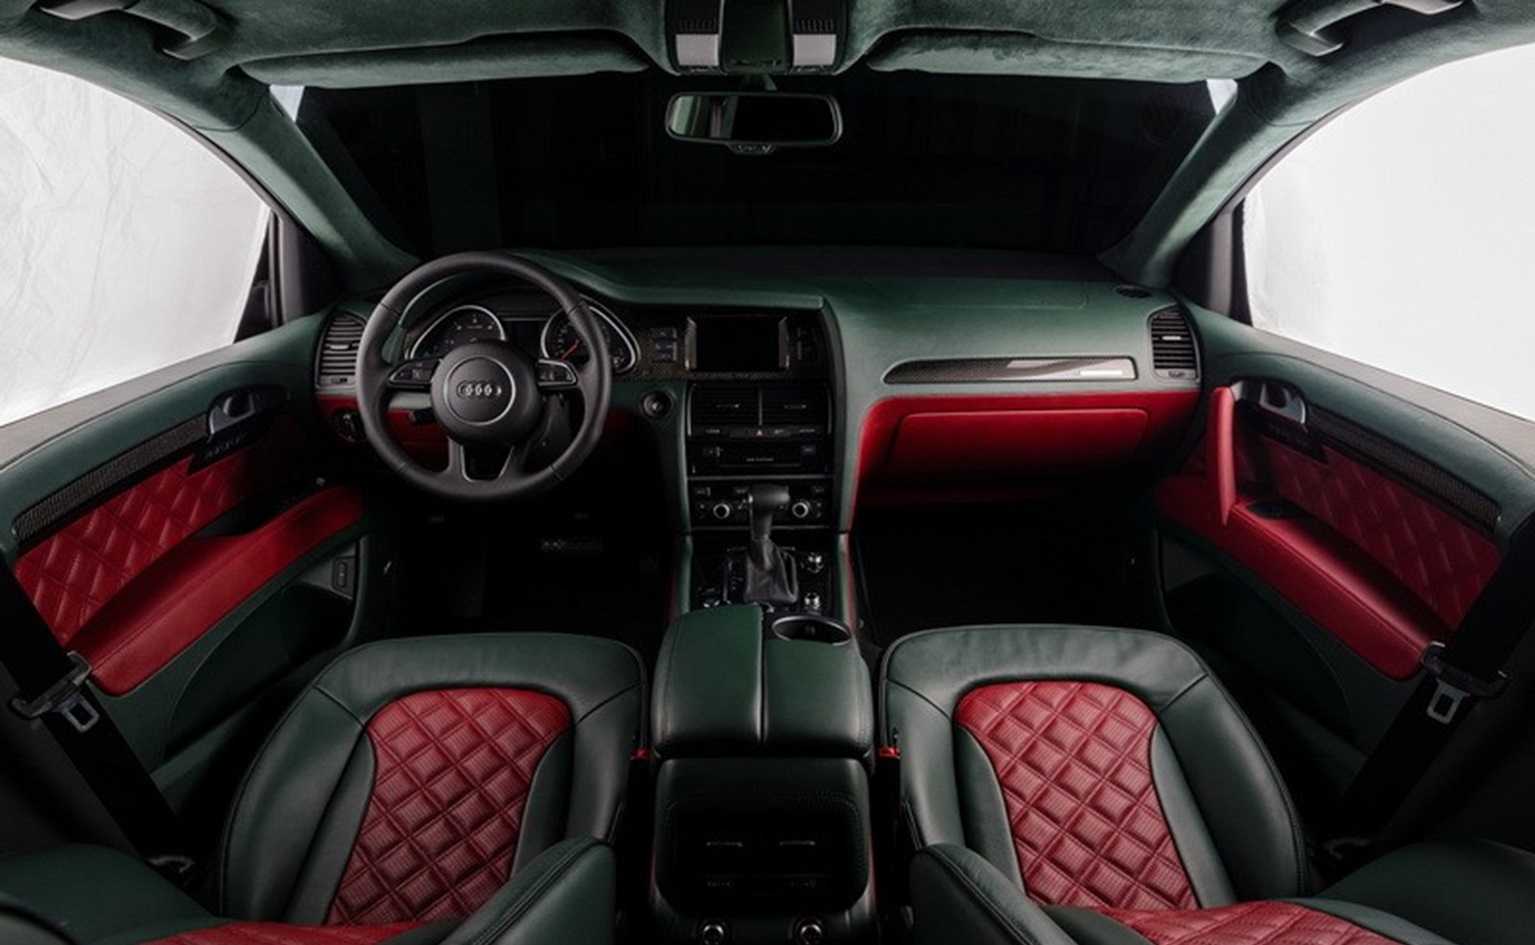 Audi Q7 – идеальный автомобиль для любого случая, так как он не только подходит для любой дороги, но и является достаточно комфортабельным автомобилем для путешествий